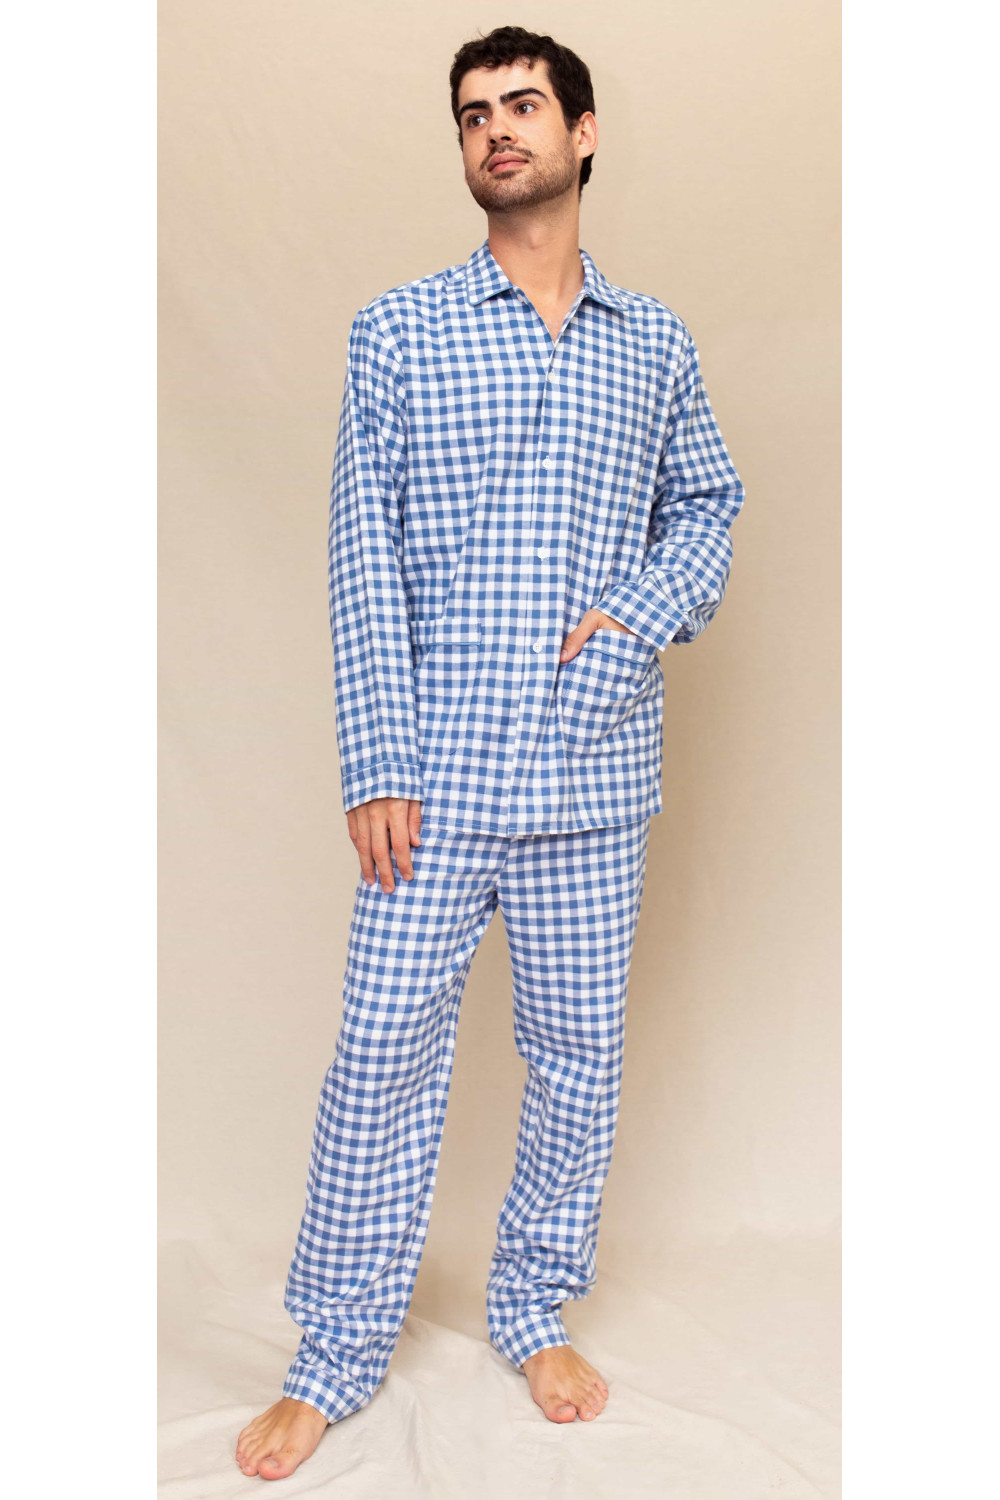 Pyjama Pilou Pilou Bleu Homme